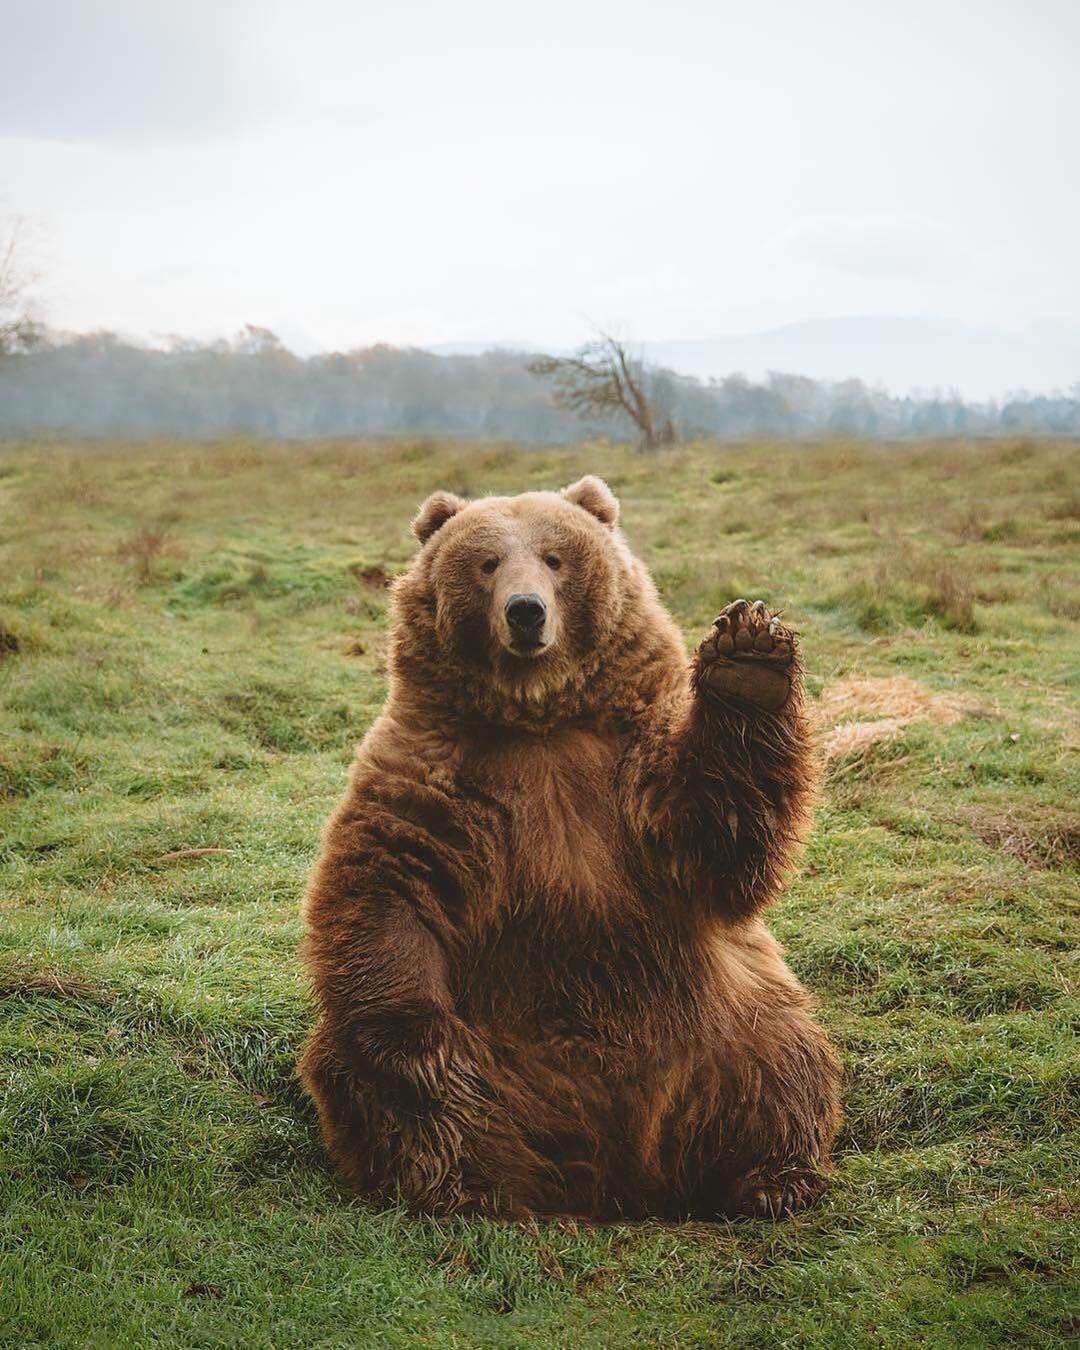 Cute Brown Bear Wallpapers - Top Những Hình Ảnh Đẹp